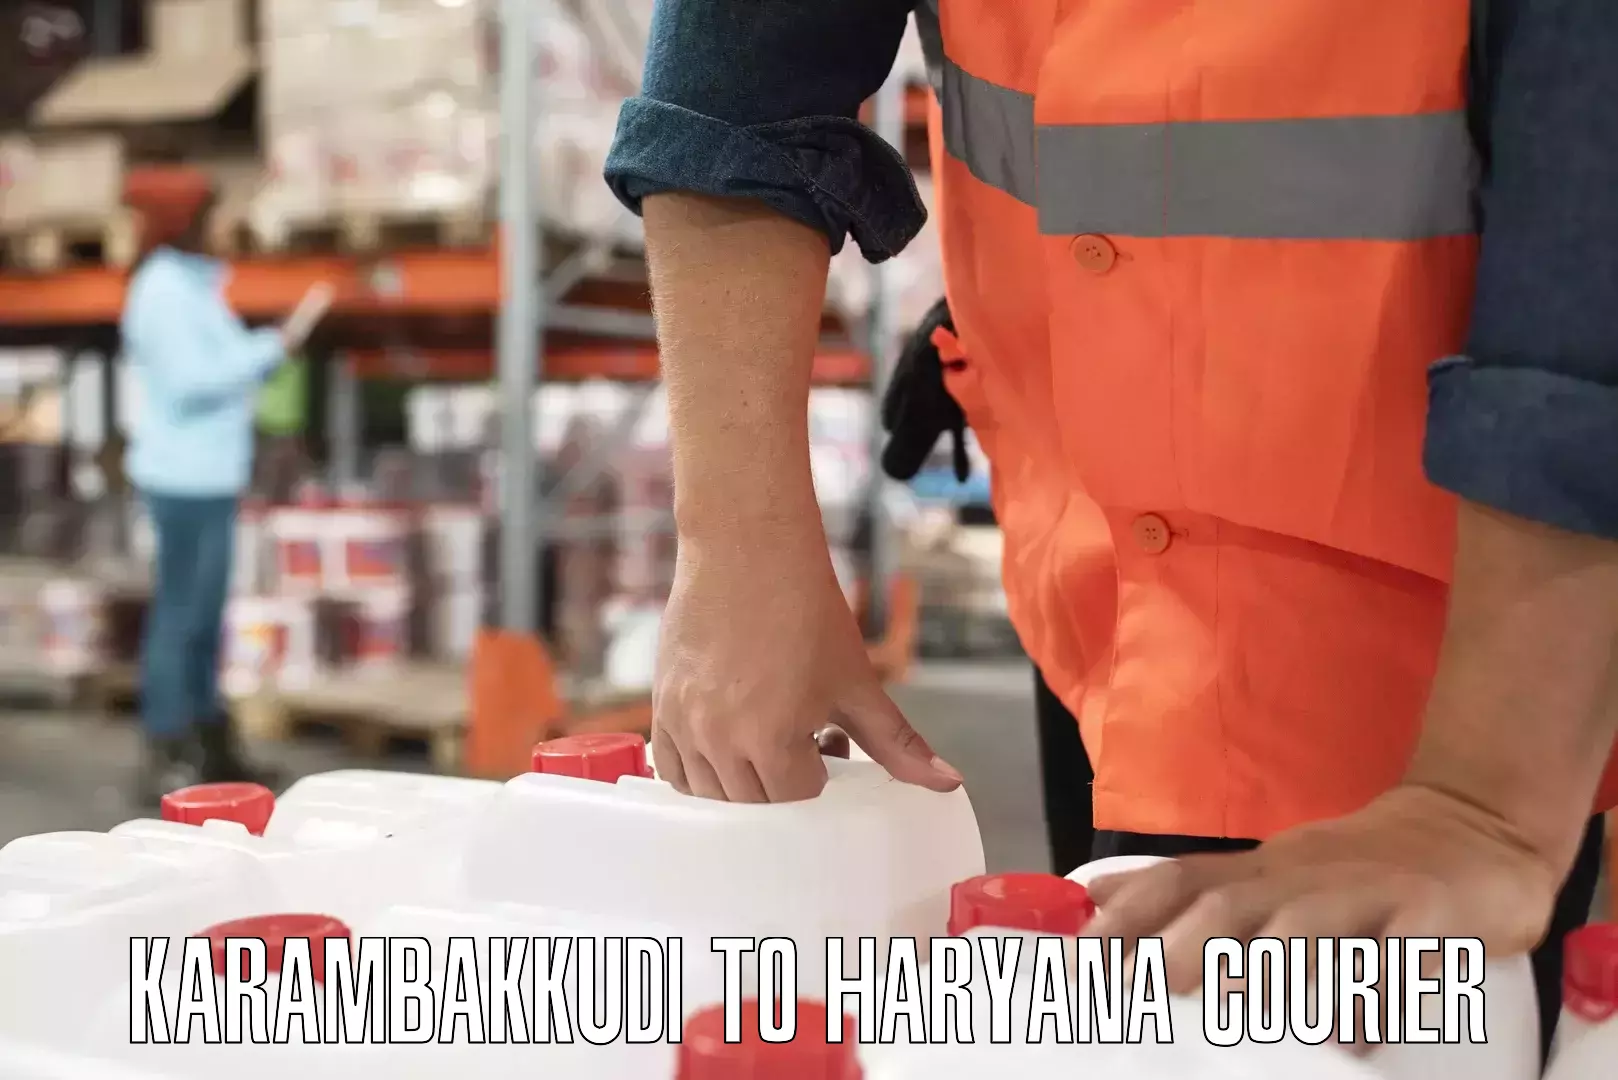 Large-scale shipping solutions Karambakkudi to NCR Haryana